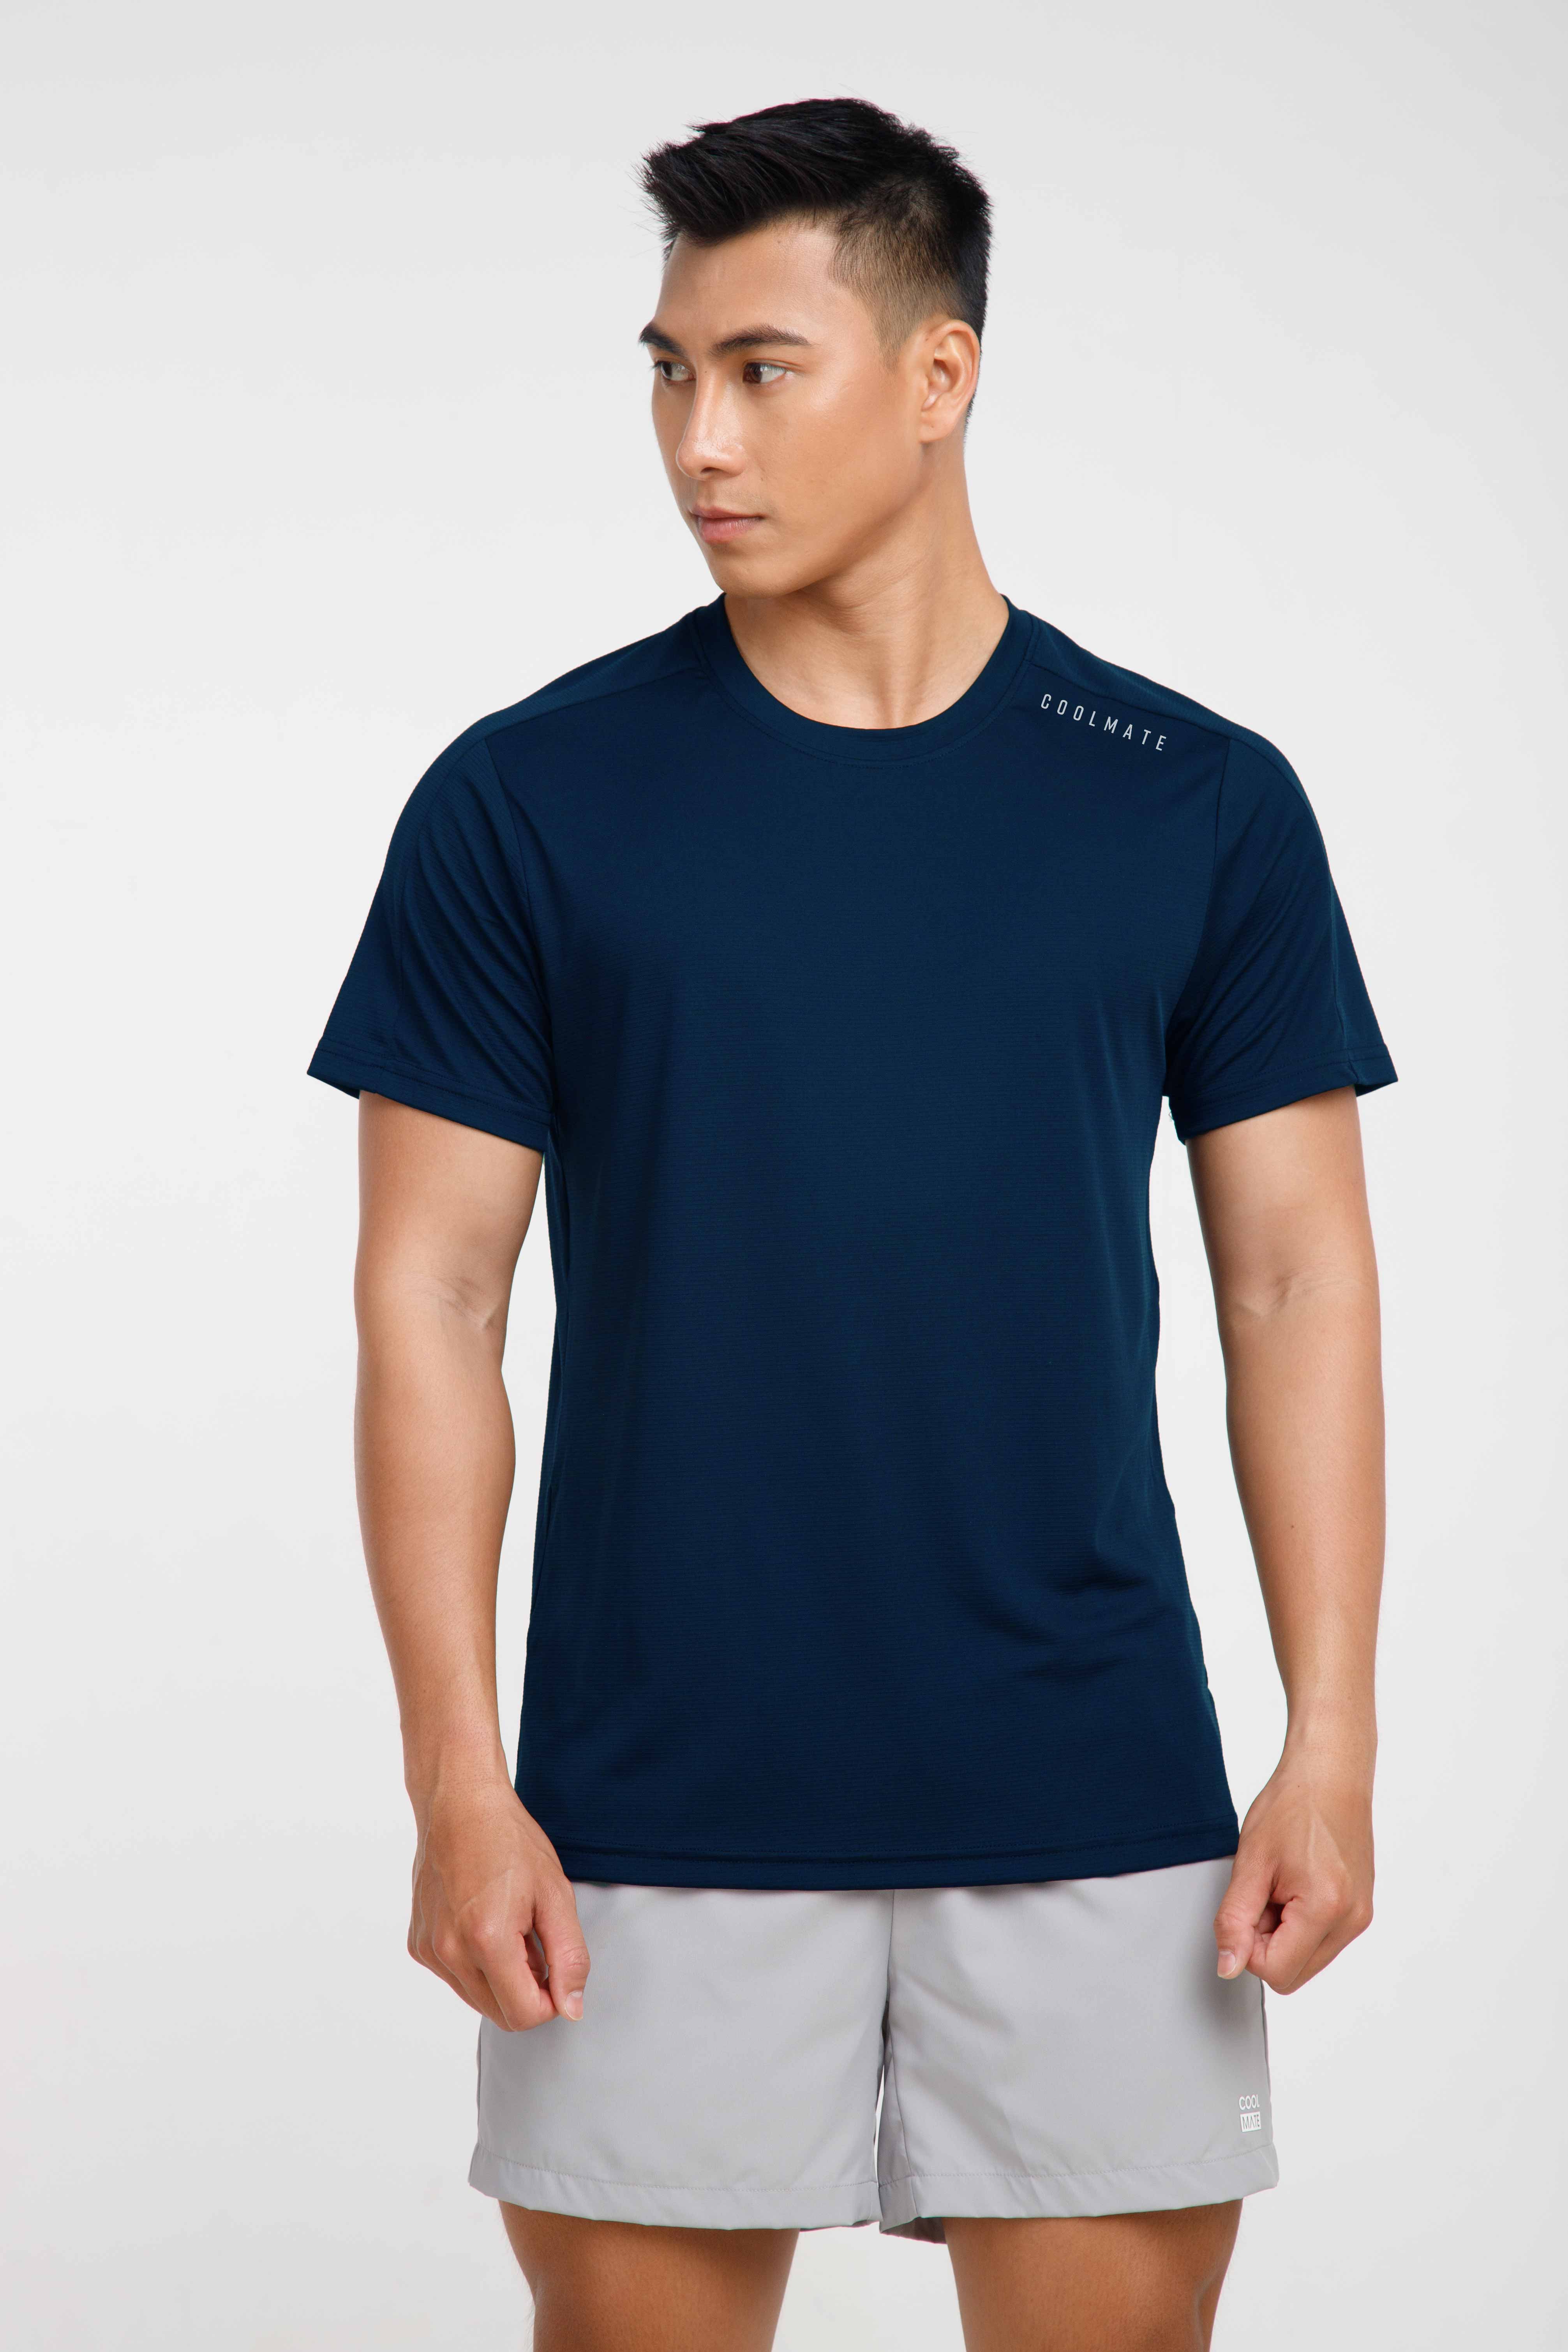 T-Shirt thể thao V1 xanh-navy